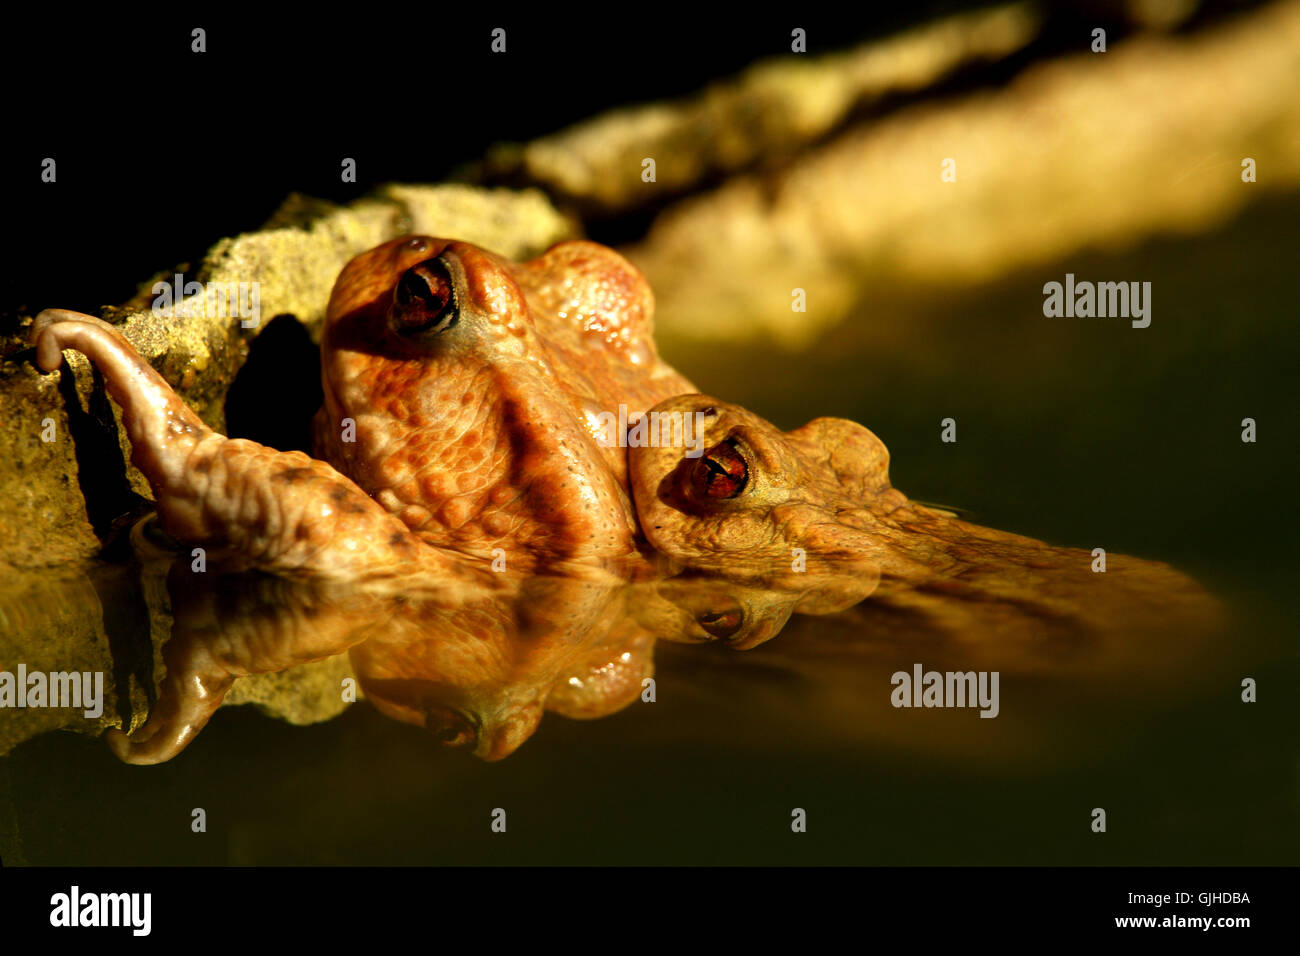 wall mirroring amphibians Stock Photo